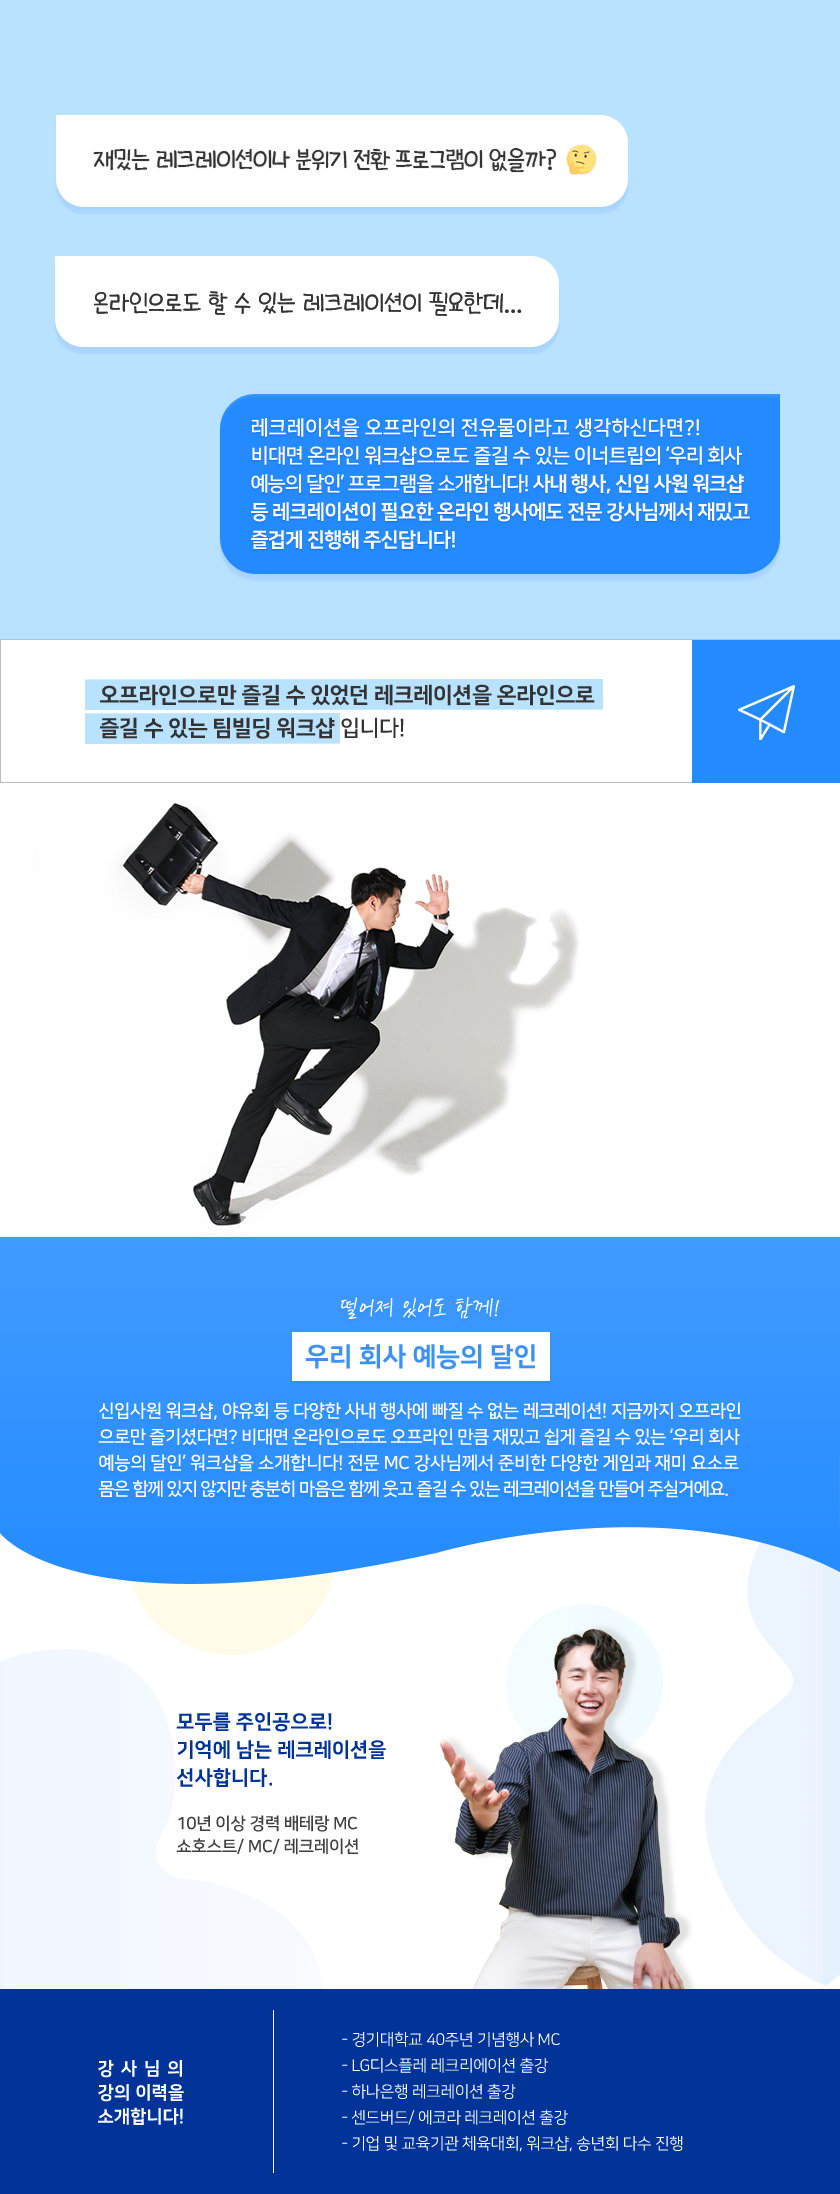 우리 회사 예능의 달인 상세소개 | 이너트립